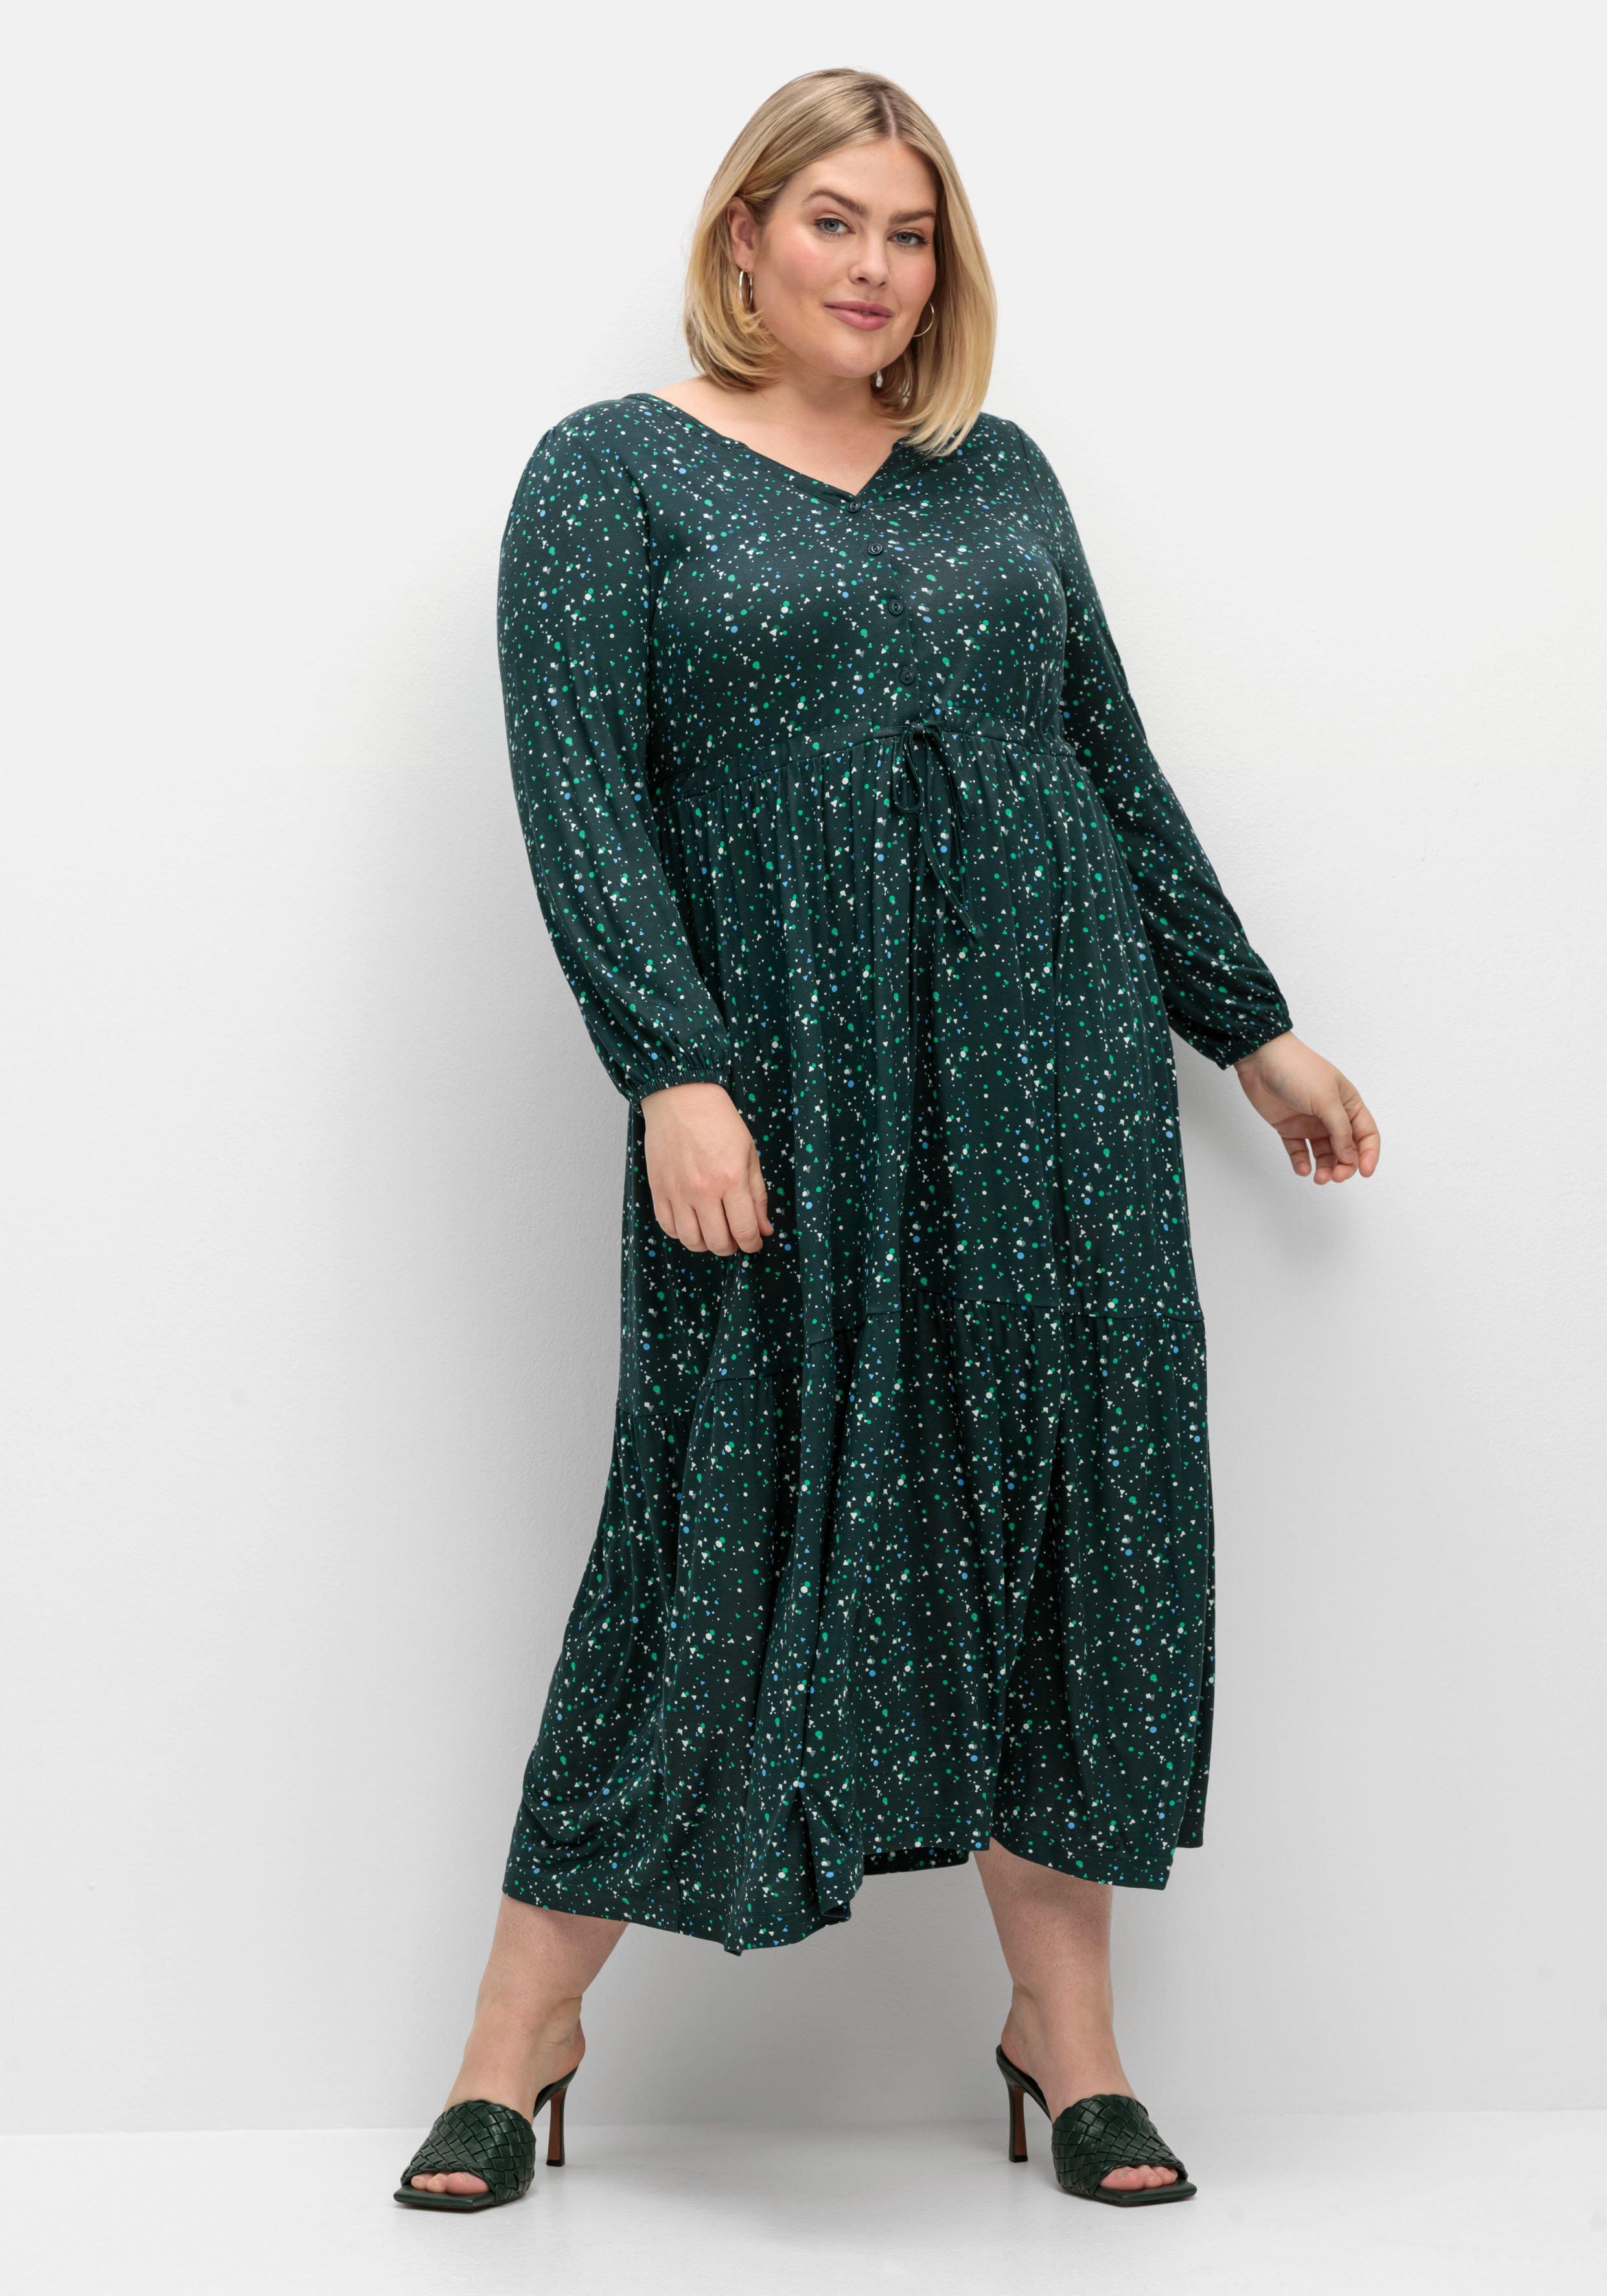 Jerseykleider große Größen grün | Mode ♥ Size sheego Plus